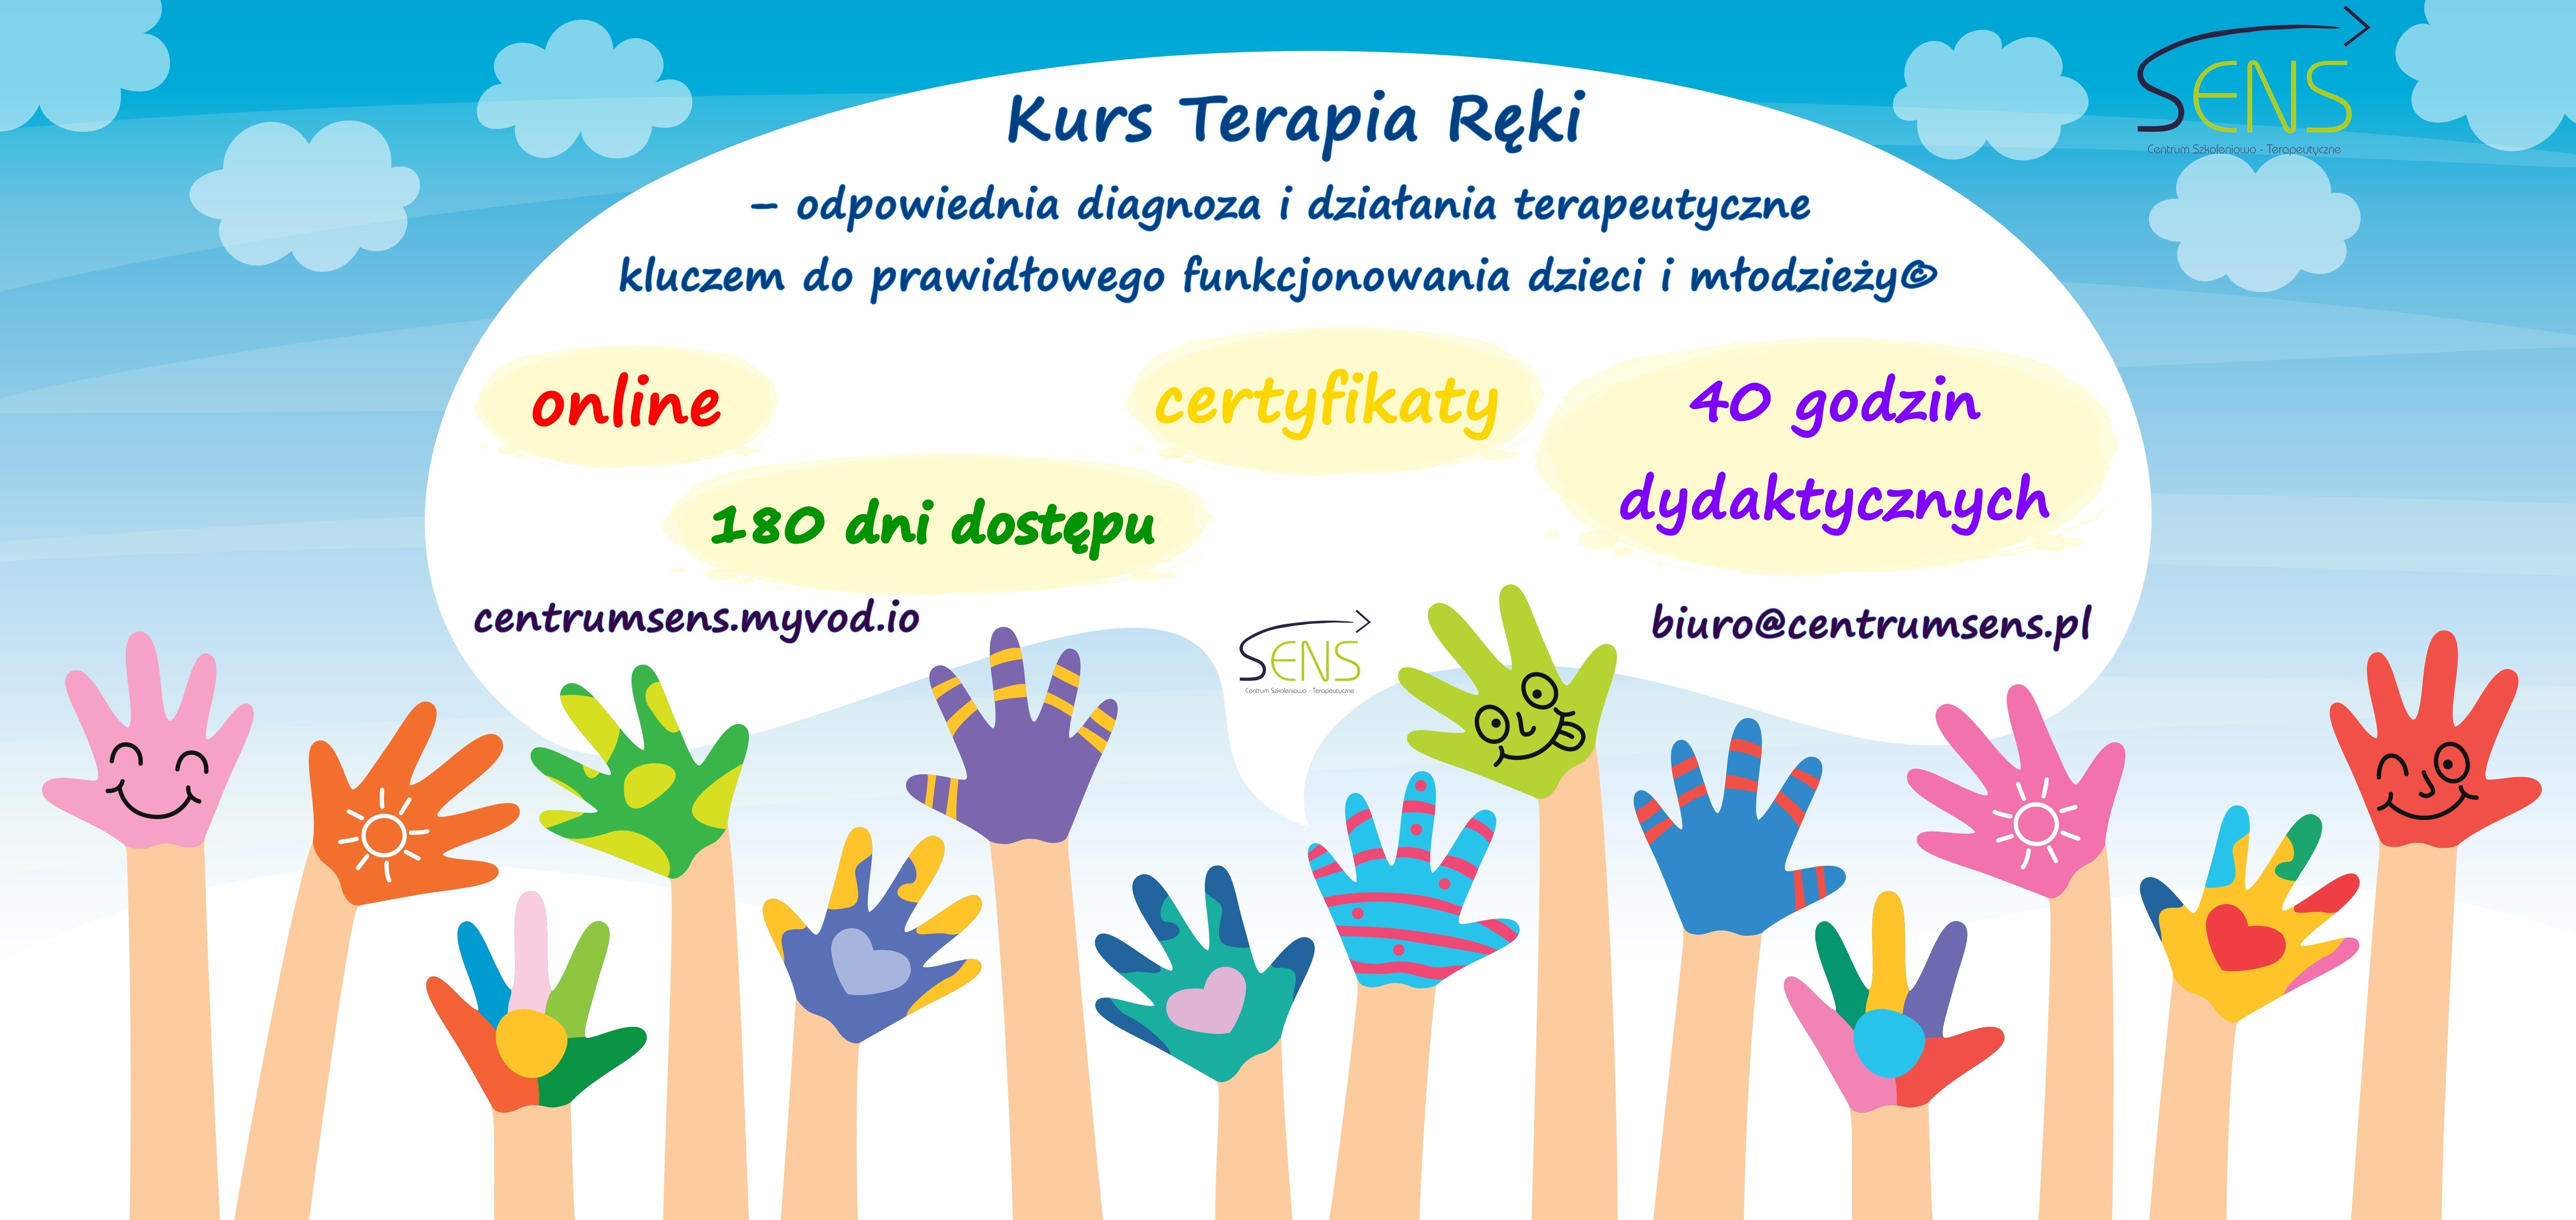 Kurs Terapia ręki dzieci i młodzieży© Kurs online w formie nagrań video. Dostęp 180 dni.